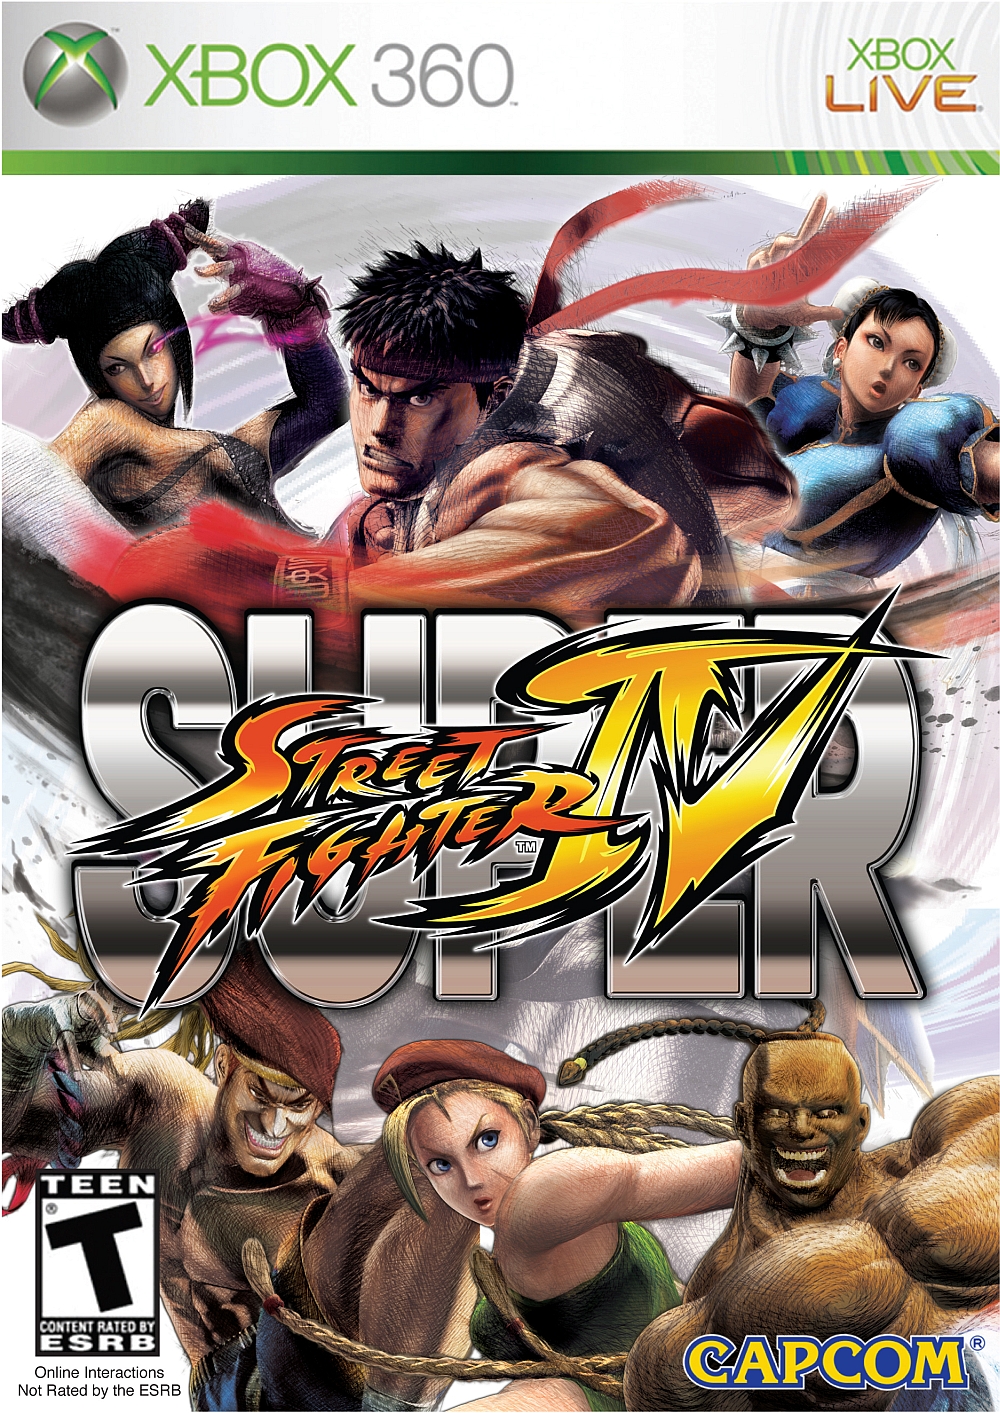 Super Street Fighter IV #4